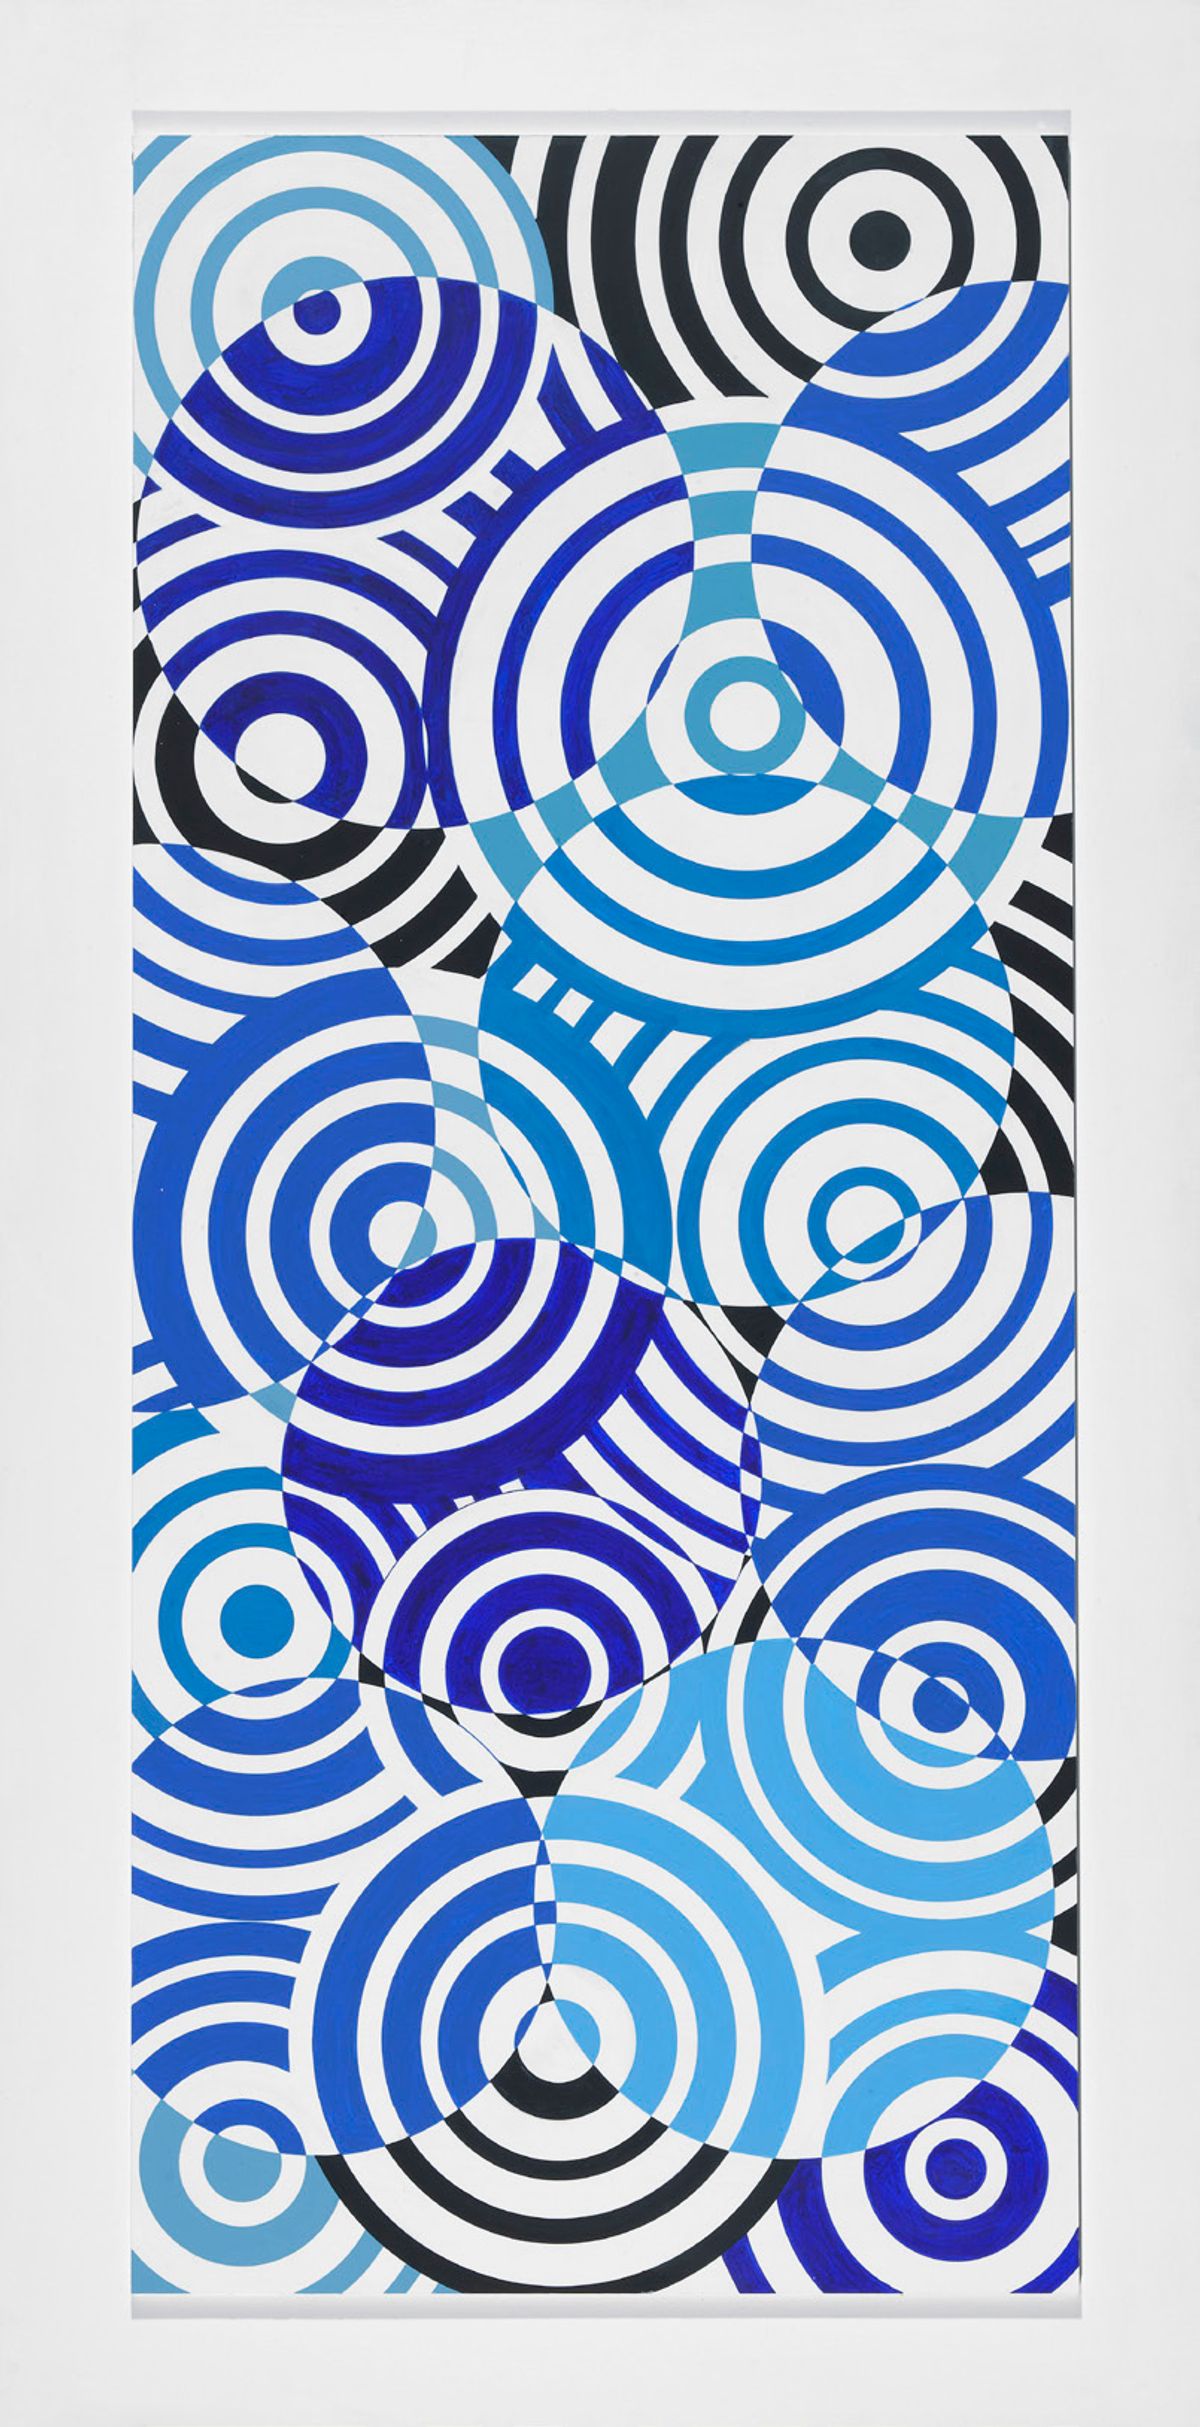 Antonio Asis, Interférences concentriques bleues et  blanches, 1961, peinture acrylique sur bois, musée  national d’Art moderne, Centre Pompidou, Paris. © Musée national d’Art moderne, Centre Pompidou